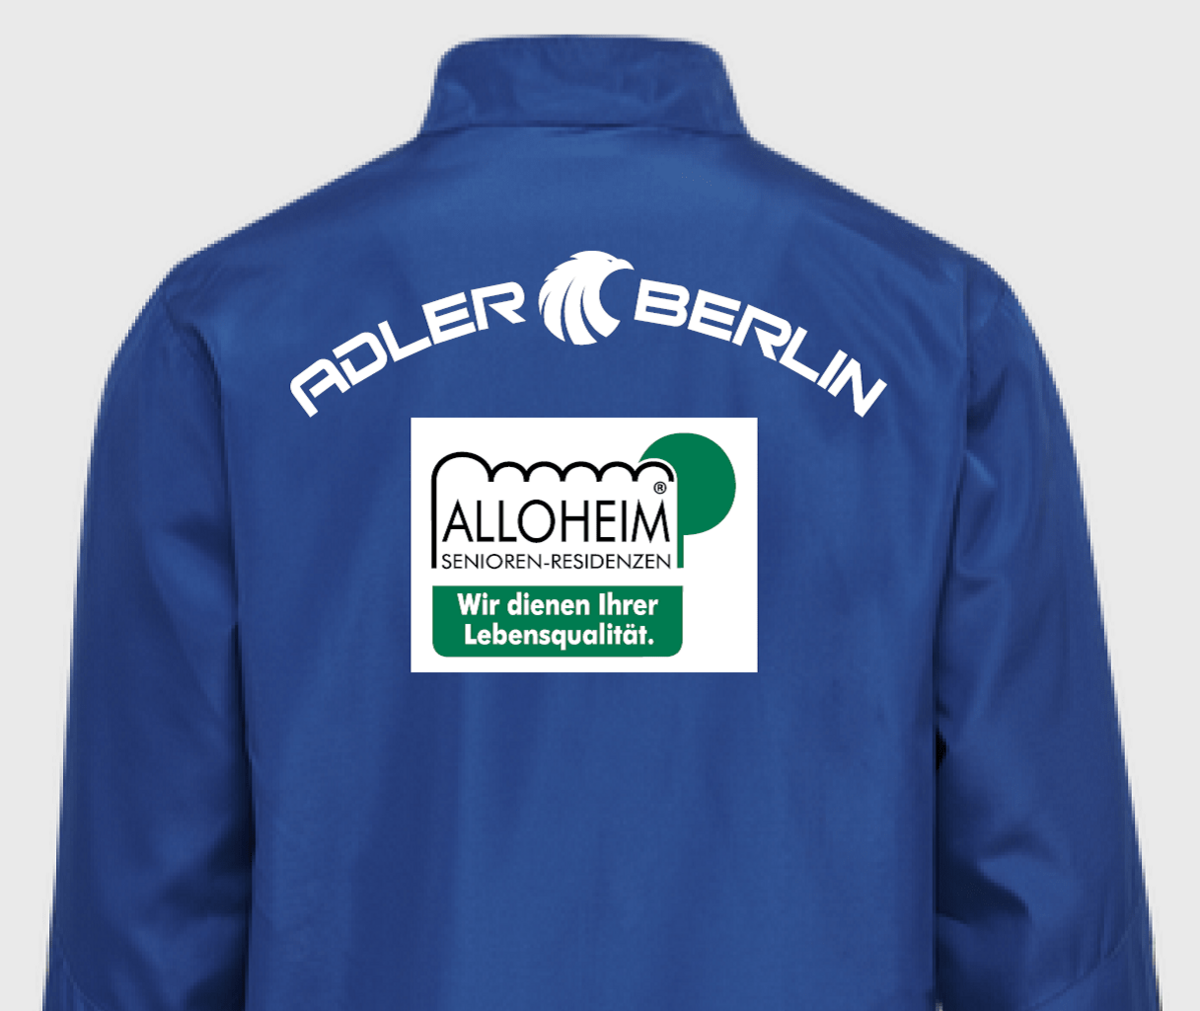 Trikot Adler Berlin mit Logo Alloheim Senioren-Residenzen